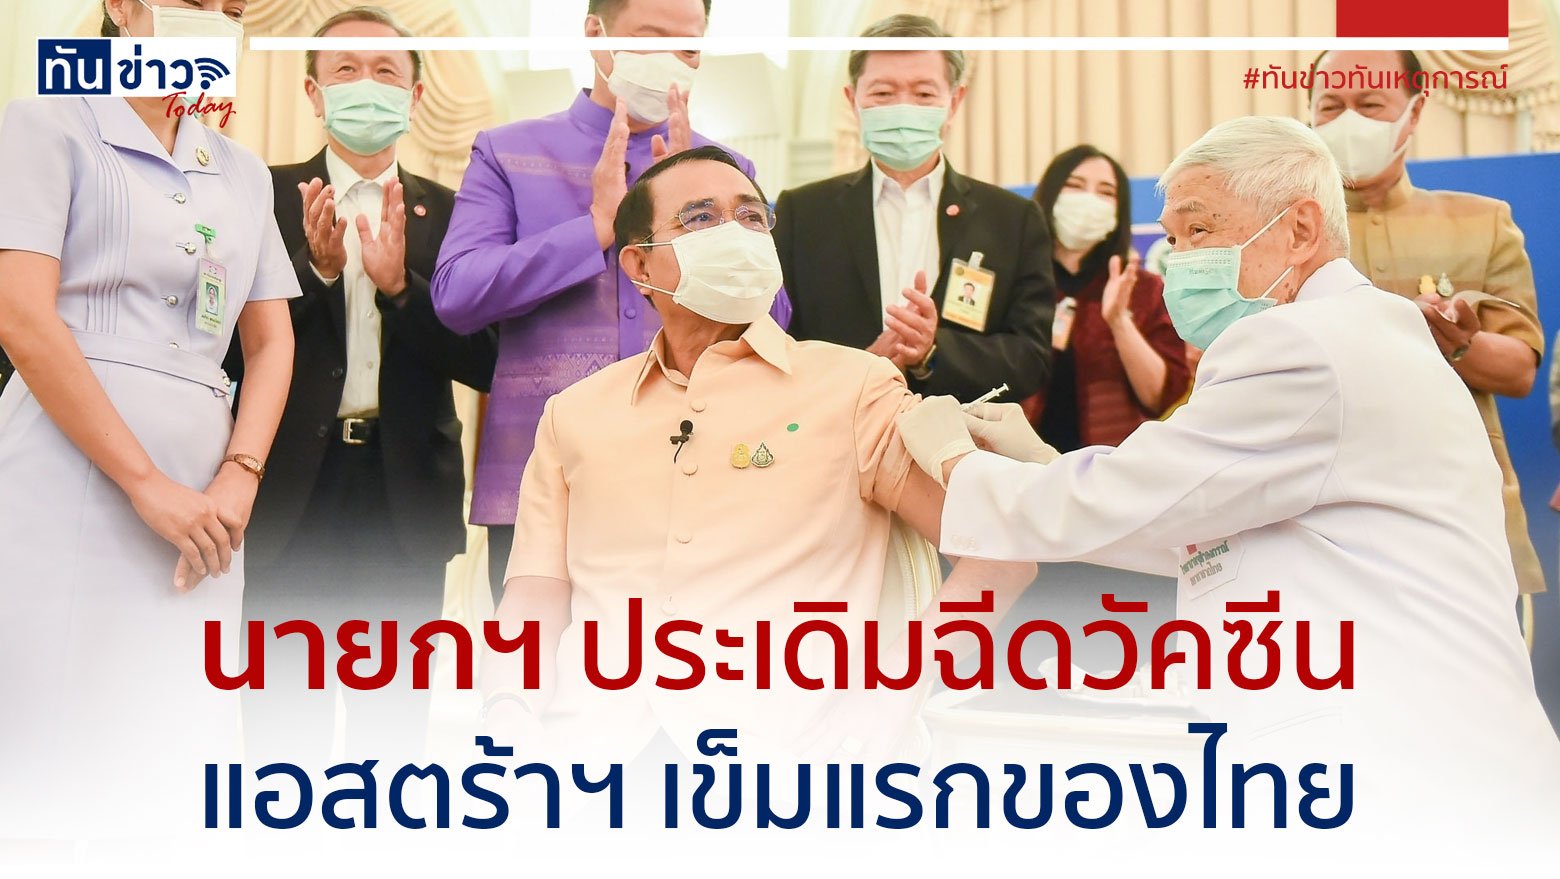 นายกฯ ประเดิมฉีดวัคซีน แอสตร้าฯ เข็มแรกของไทย